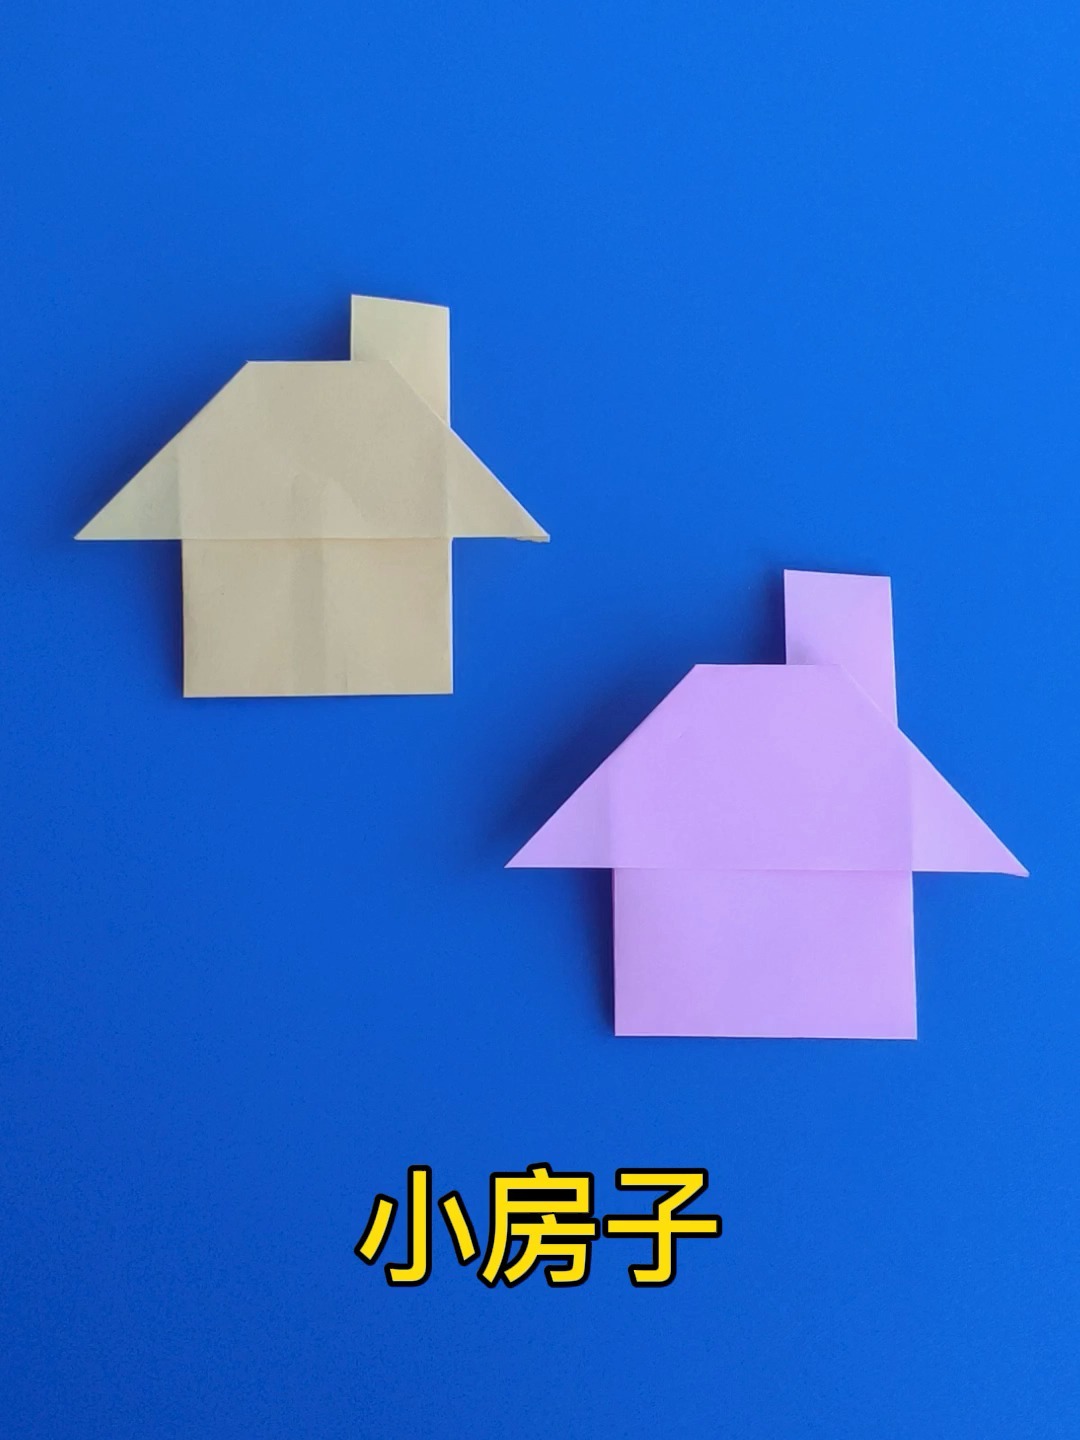 简单折纸小房子图片